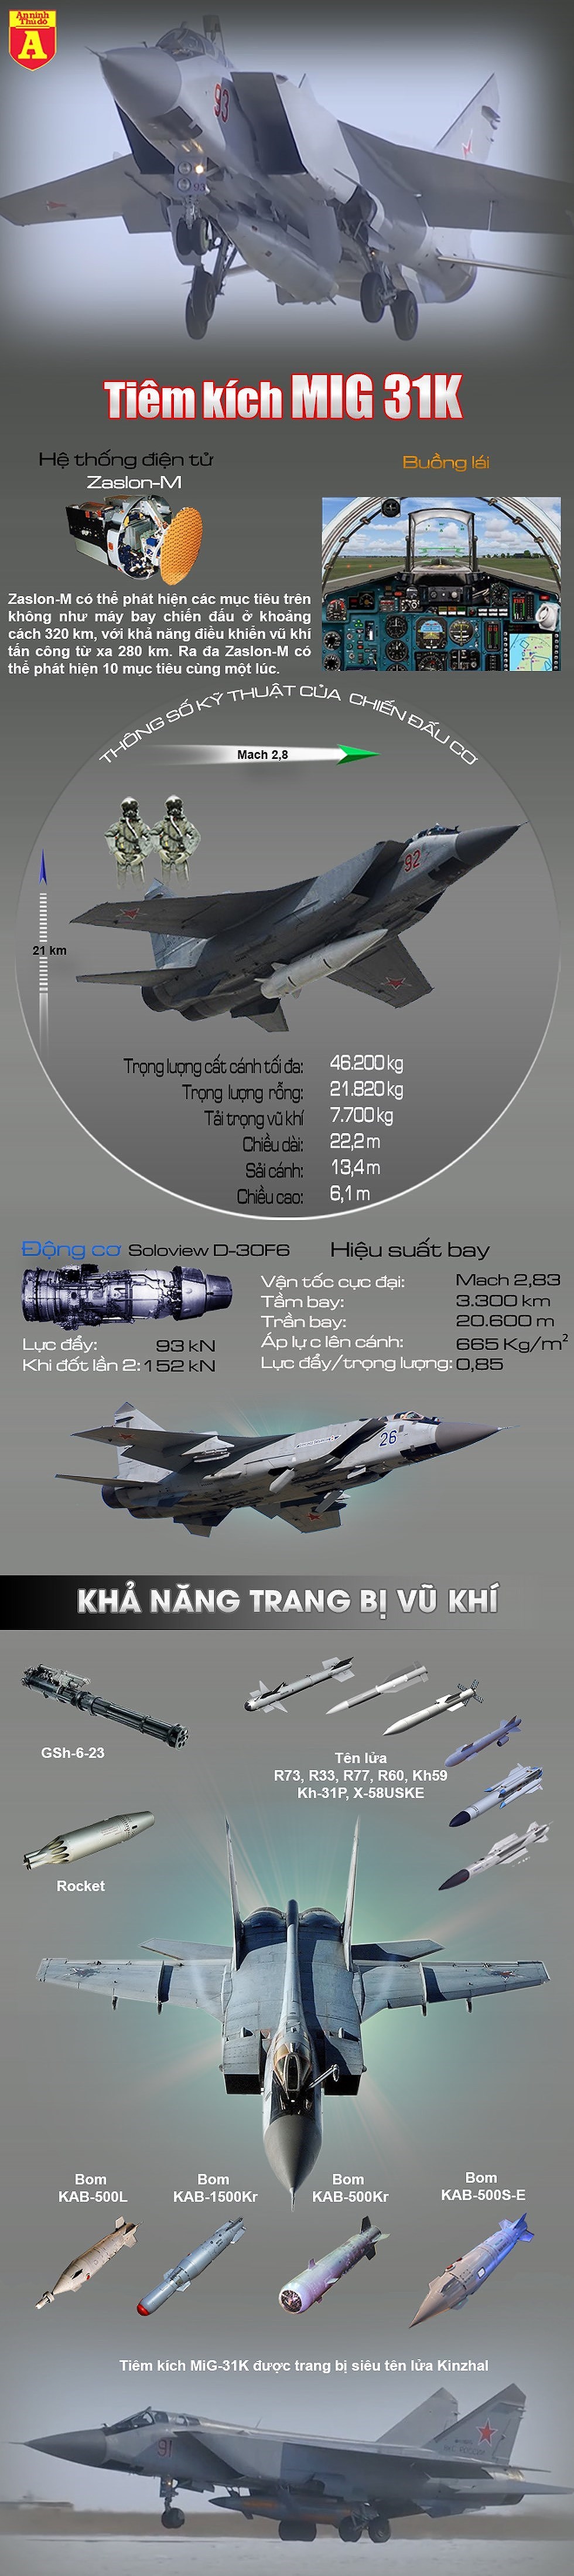 [Infographic] Nga tiếp tục cho MiG-31K mang "dao găm" Kh-47 tái xuất - Ảnh 1